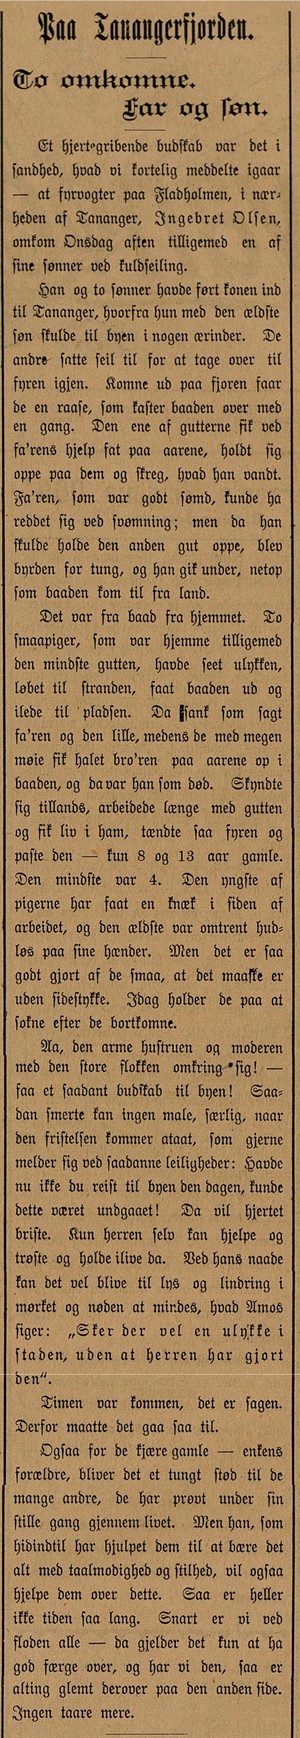 1894.01.26 - Aftenbladet - Artikkel om forliset